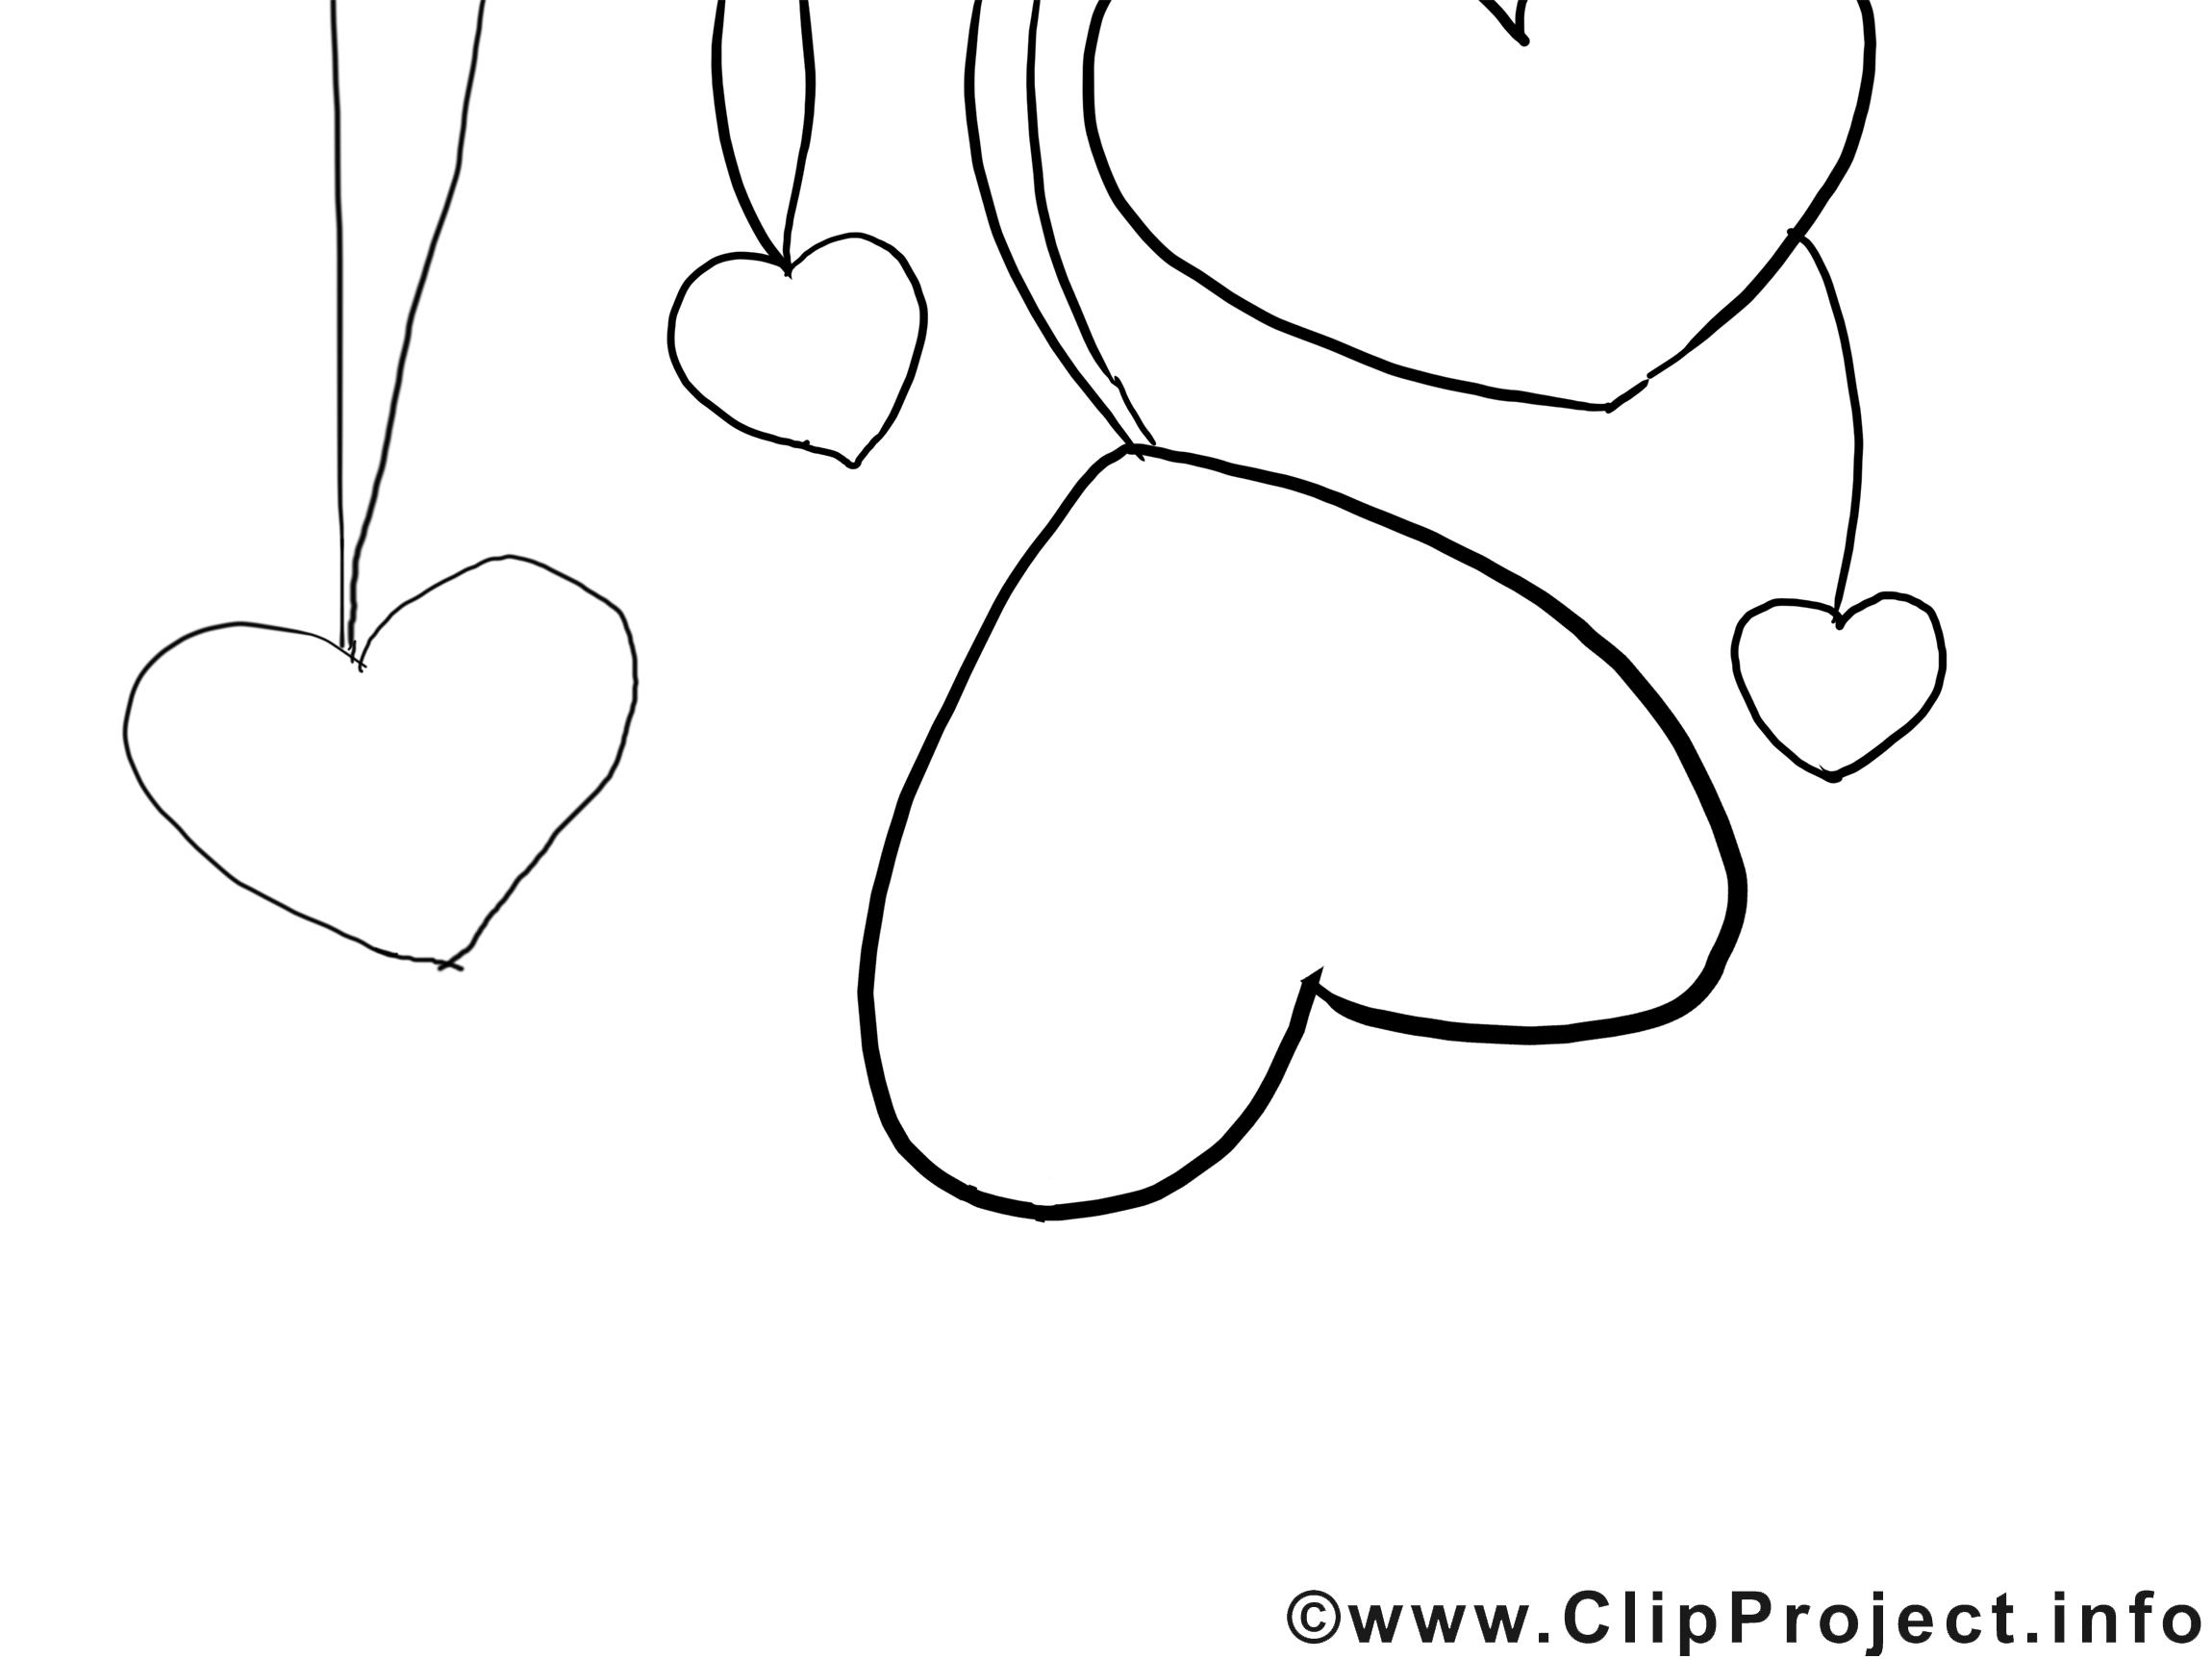 Coeurs dessin gratuit – Saint-valentin à colorier